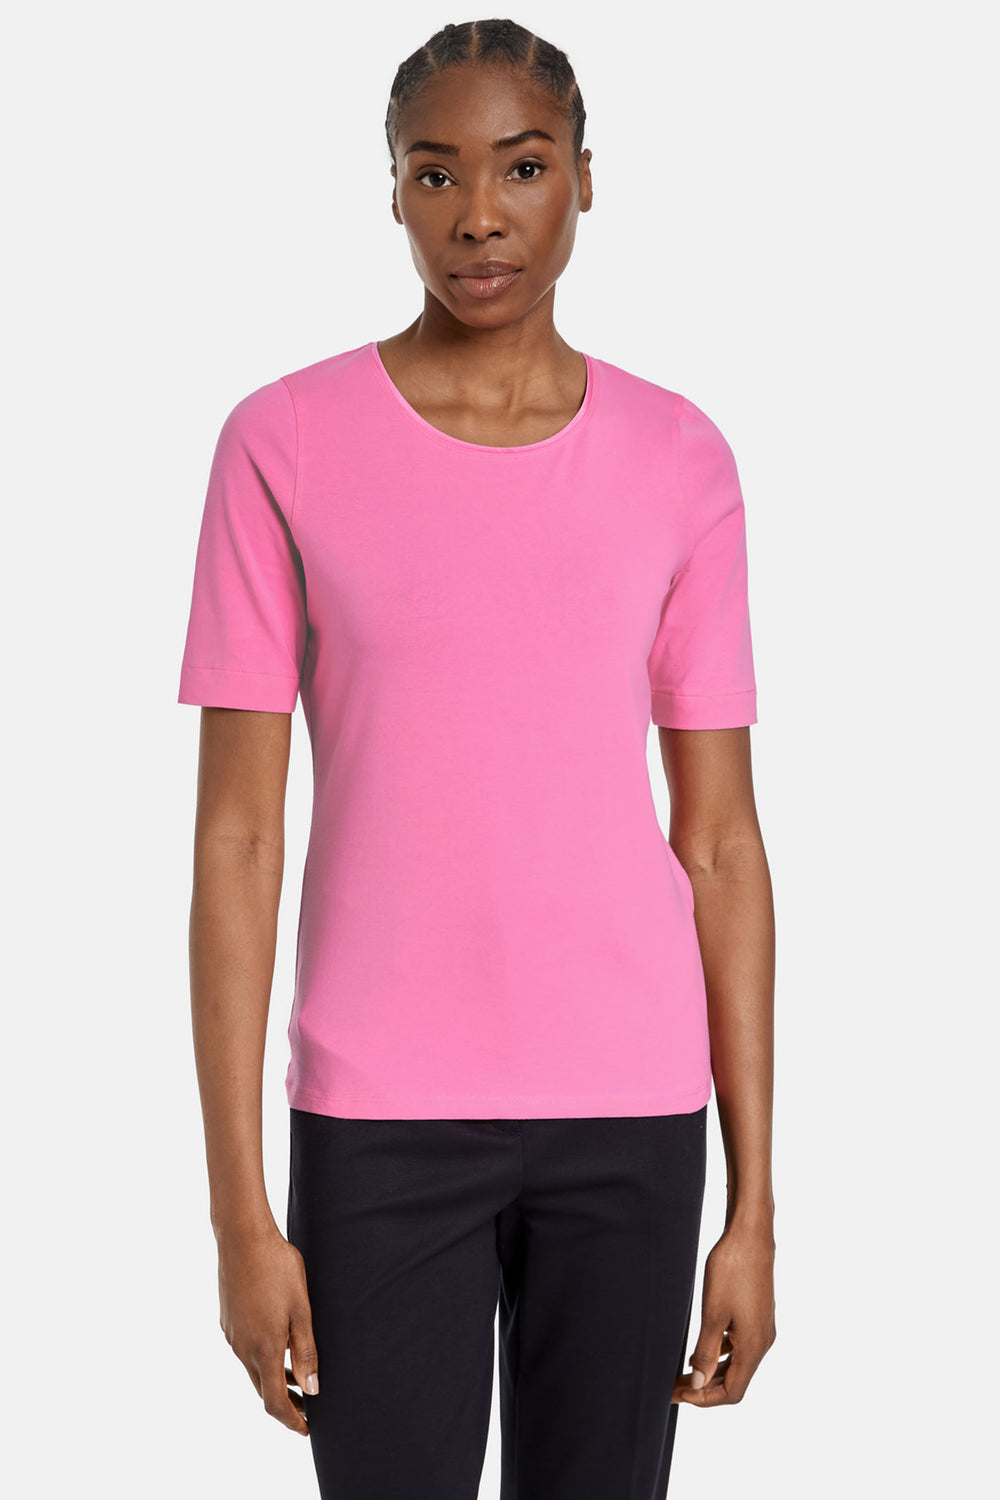 Gerry Weber 977048-44000 Aurora Pink Round Neck T-Shirt - Dotique Chesterfield